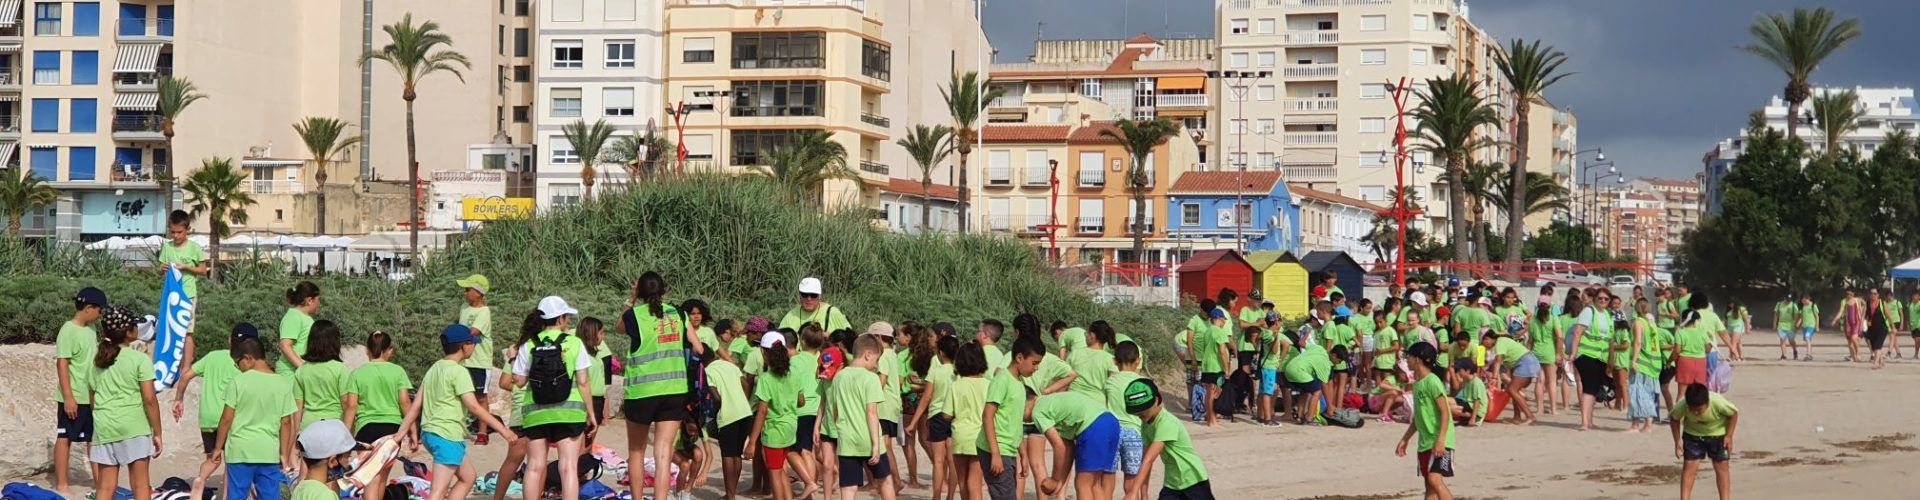 El Fortí y Fora Forat: playas “de bandera” en Vinaròs